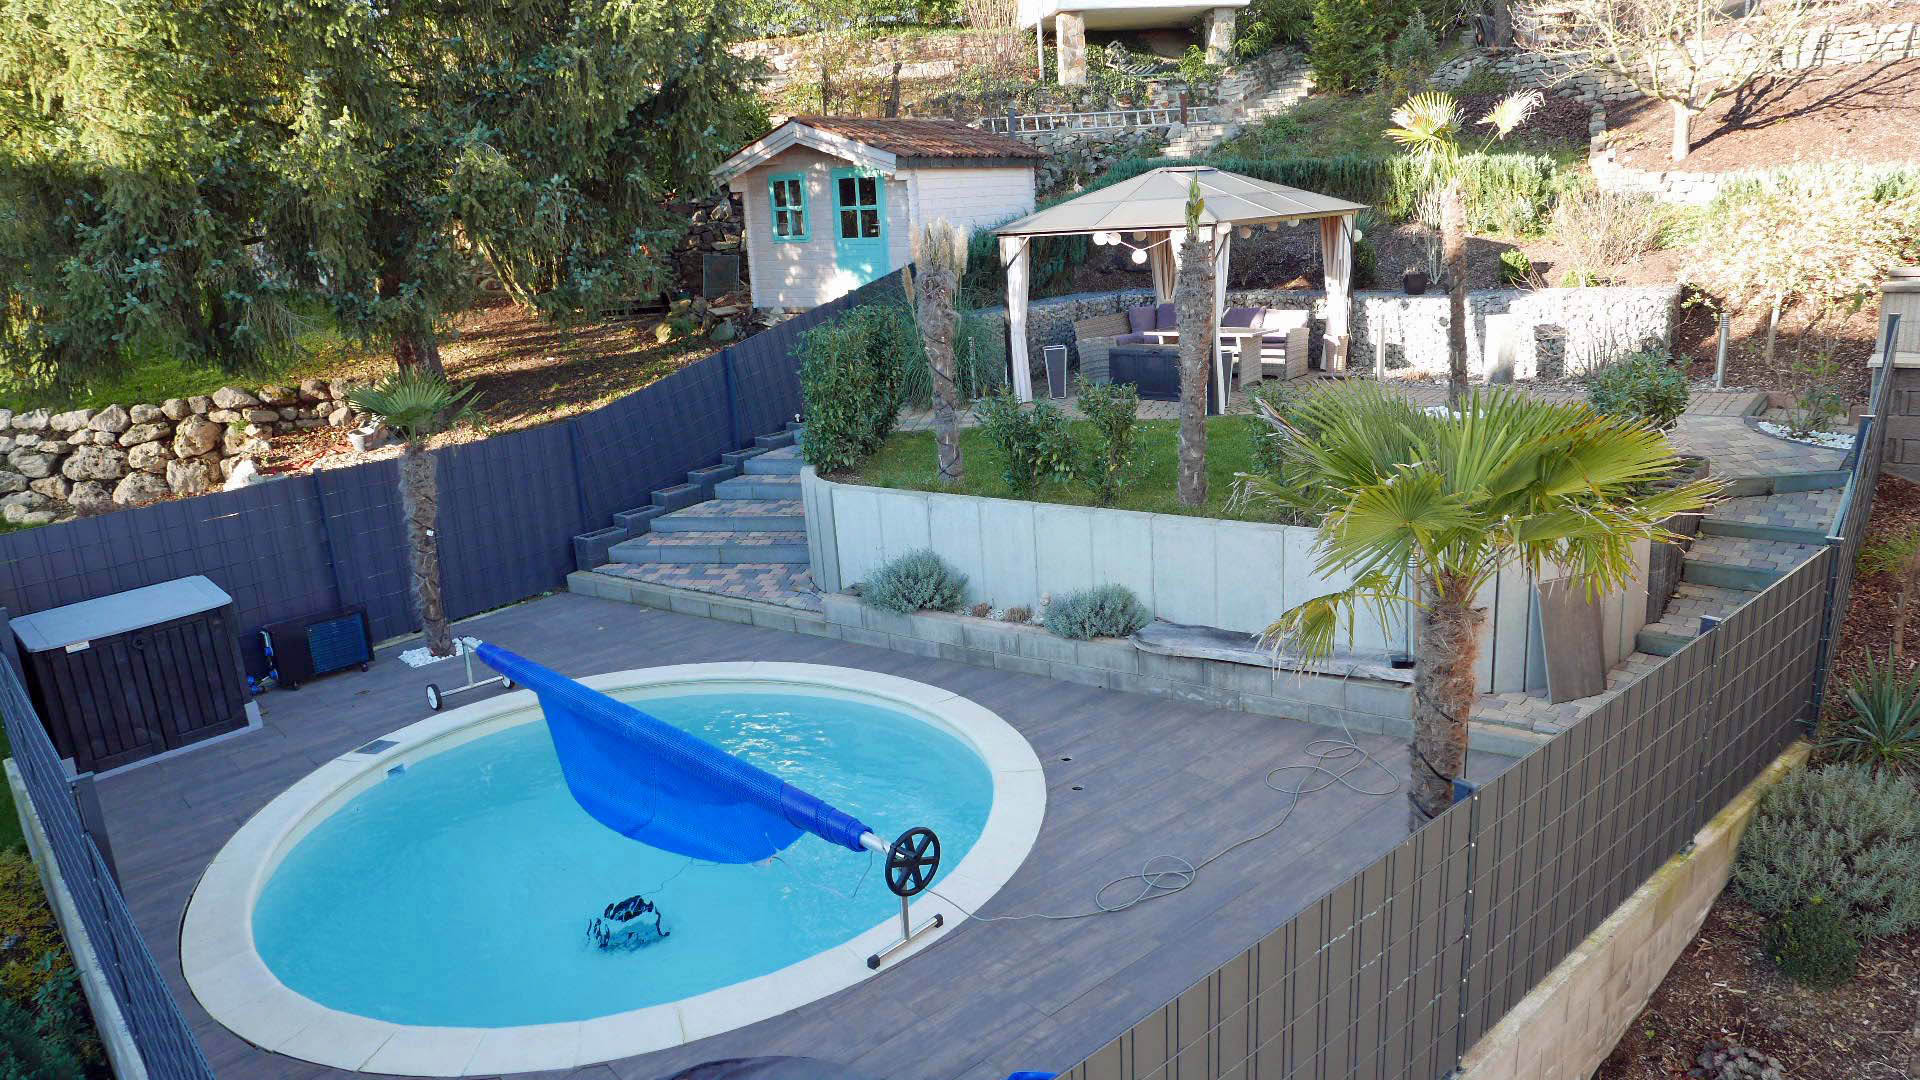 Katzwinkel: Modernes Wohnhaus mit Pool, Solar- und Photovoltaikanlage, ...Swimmingpool mit moderner Technik (Wärmepumpe)